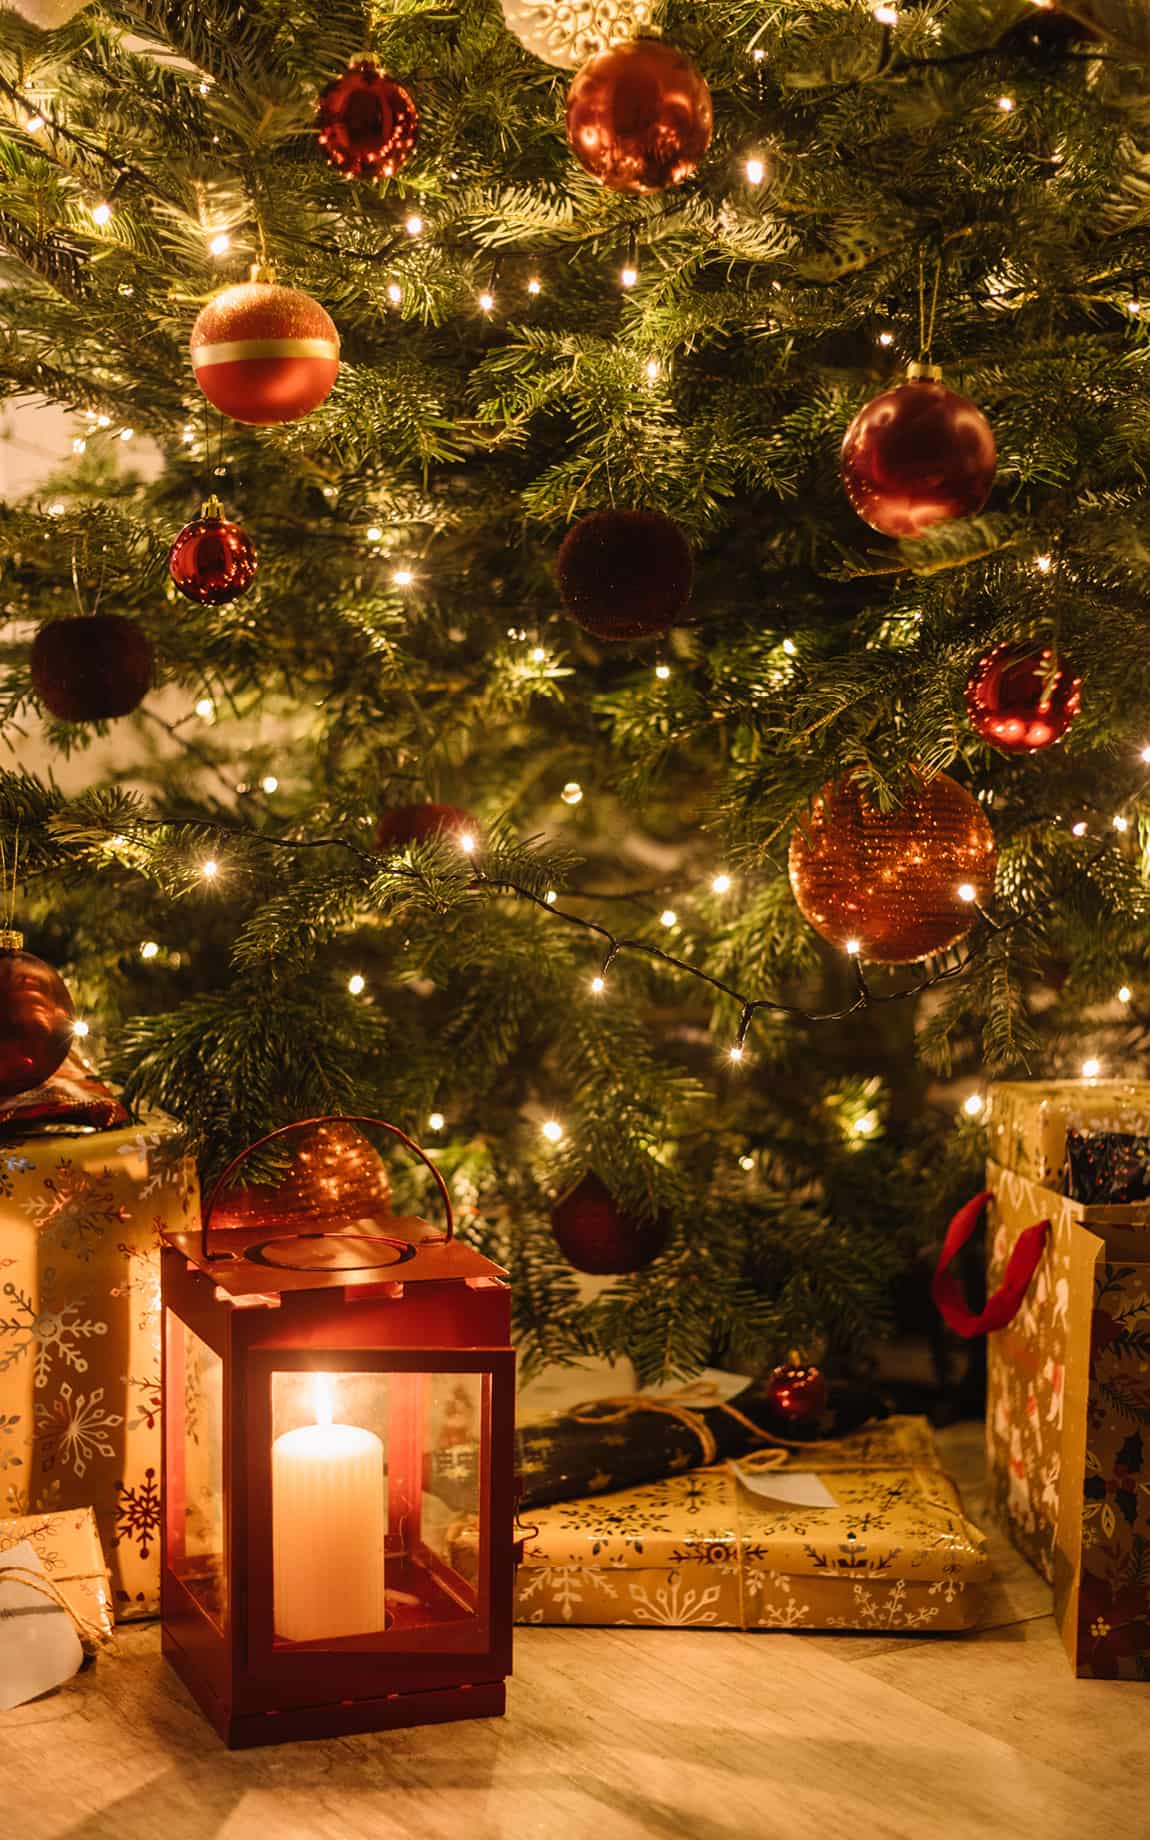 Geschenk stehen unter Weihnachtsbaum - Biohacking Bad Dürrheim